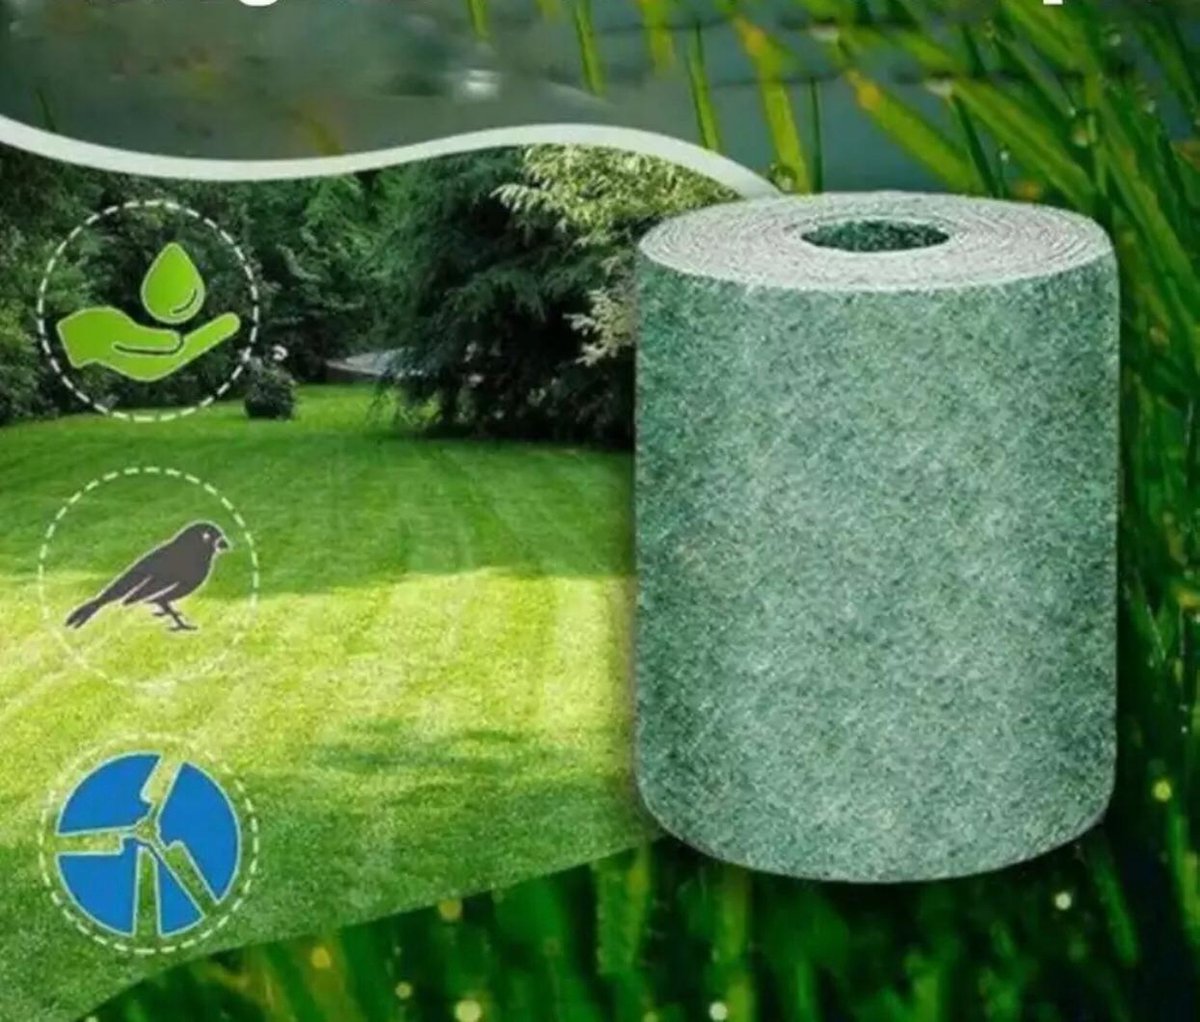 Ariko Grassaatrolle – 10 x 0,20 m – Graswiederherstellung – Grasinstallation – Grasreparatur – Sehr einfach zu verwenden – Bio-Gras – Grasrolle